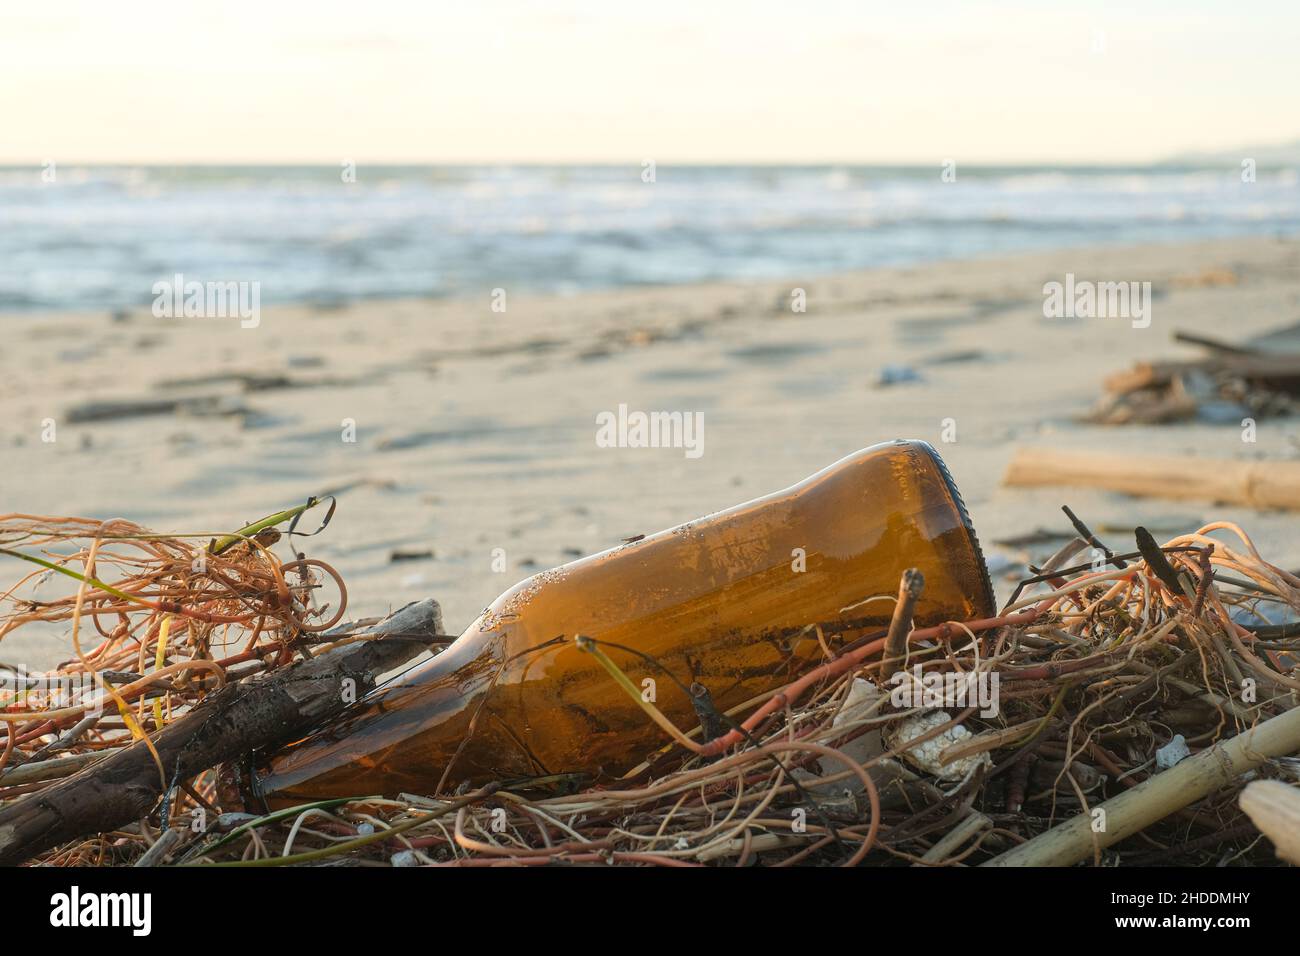 Botella de cerveza de vidrio vacía desechada en el ecosistema del mar sucio, contaminación de residuos ambientales Foto de stock